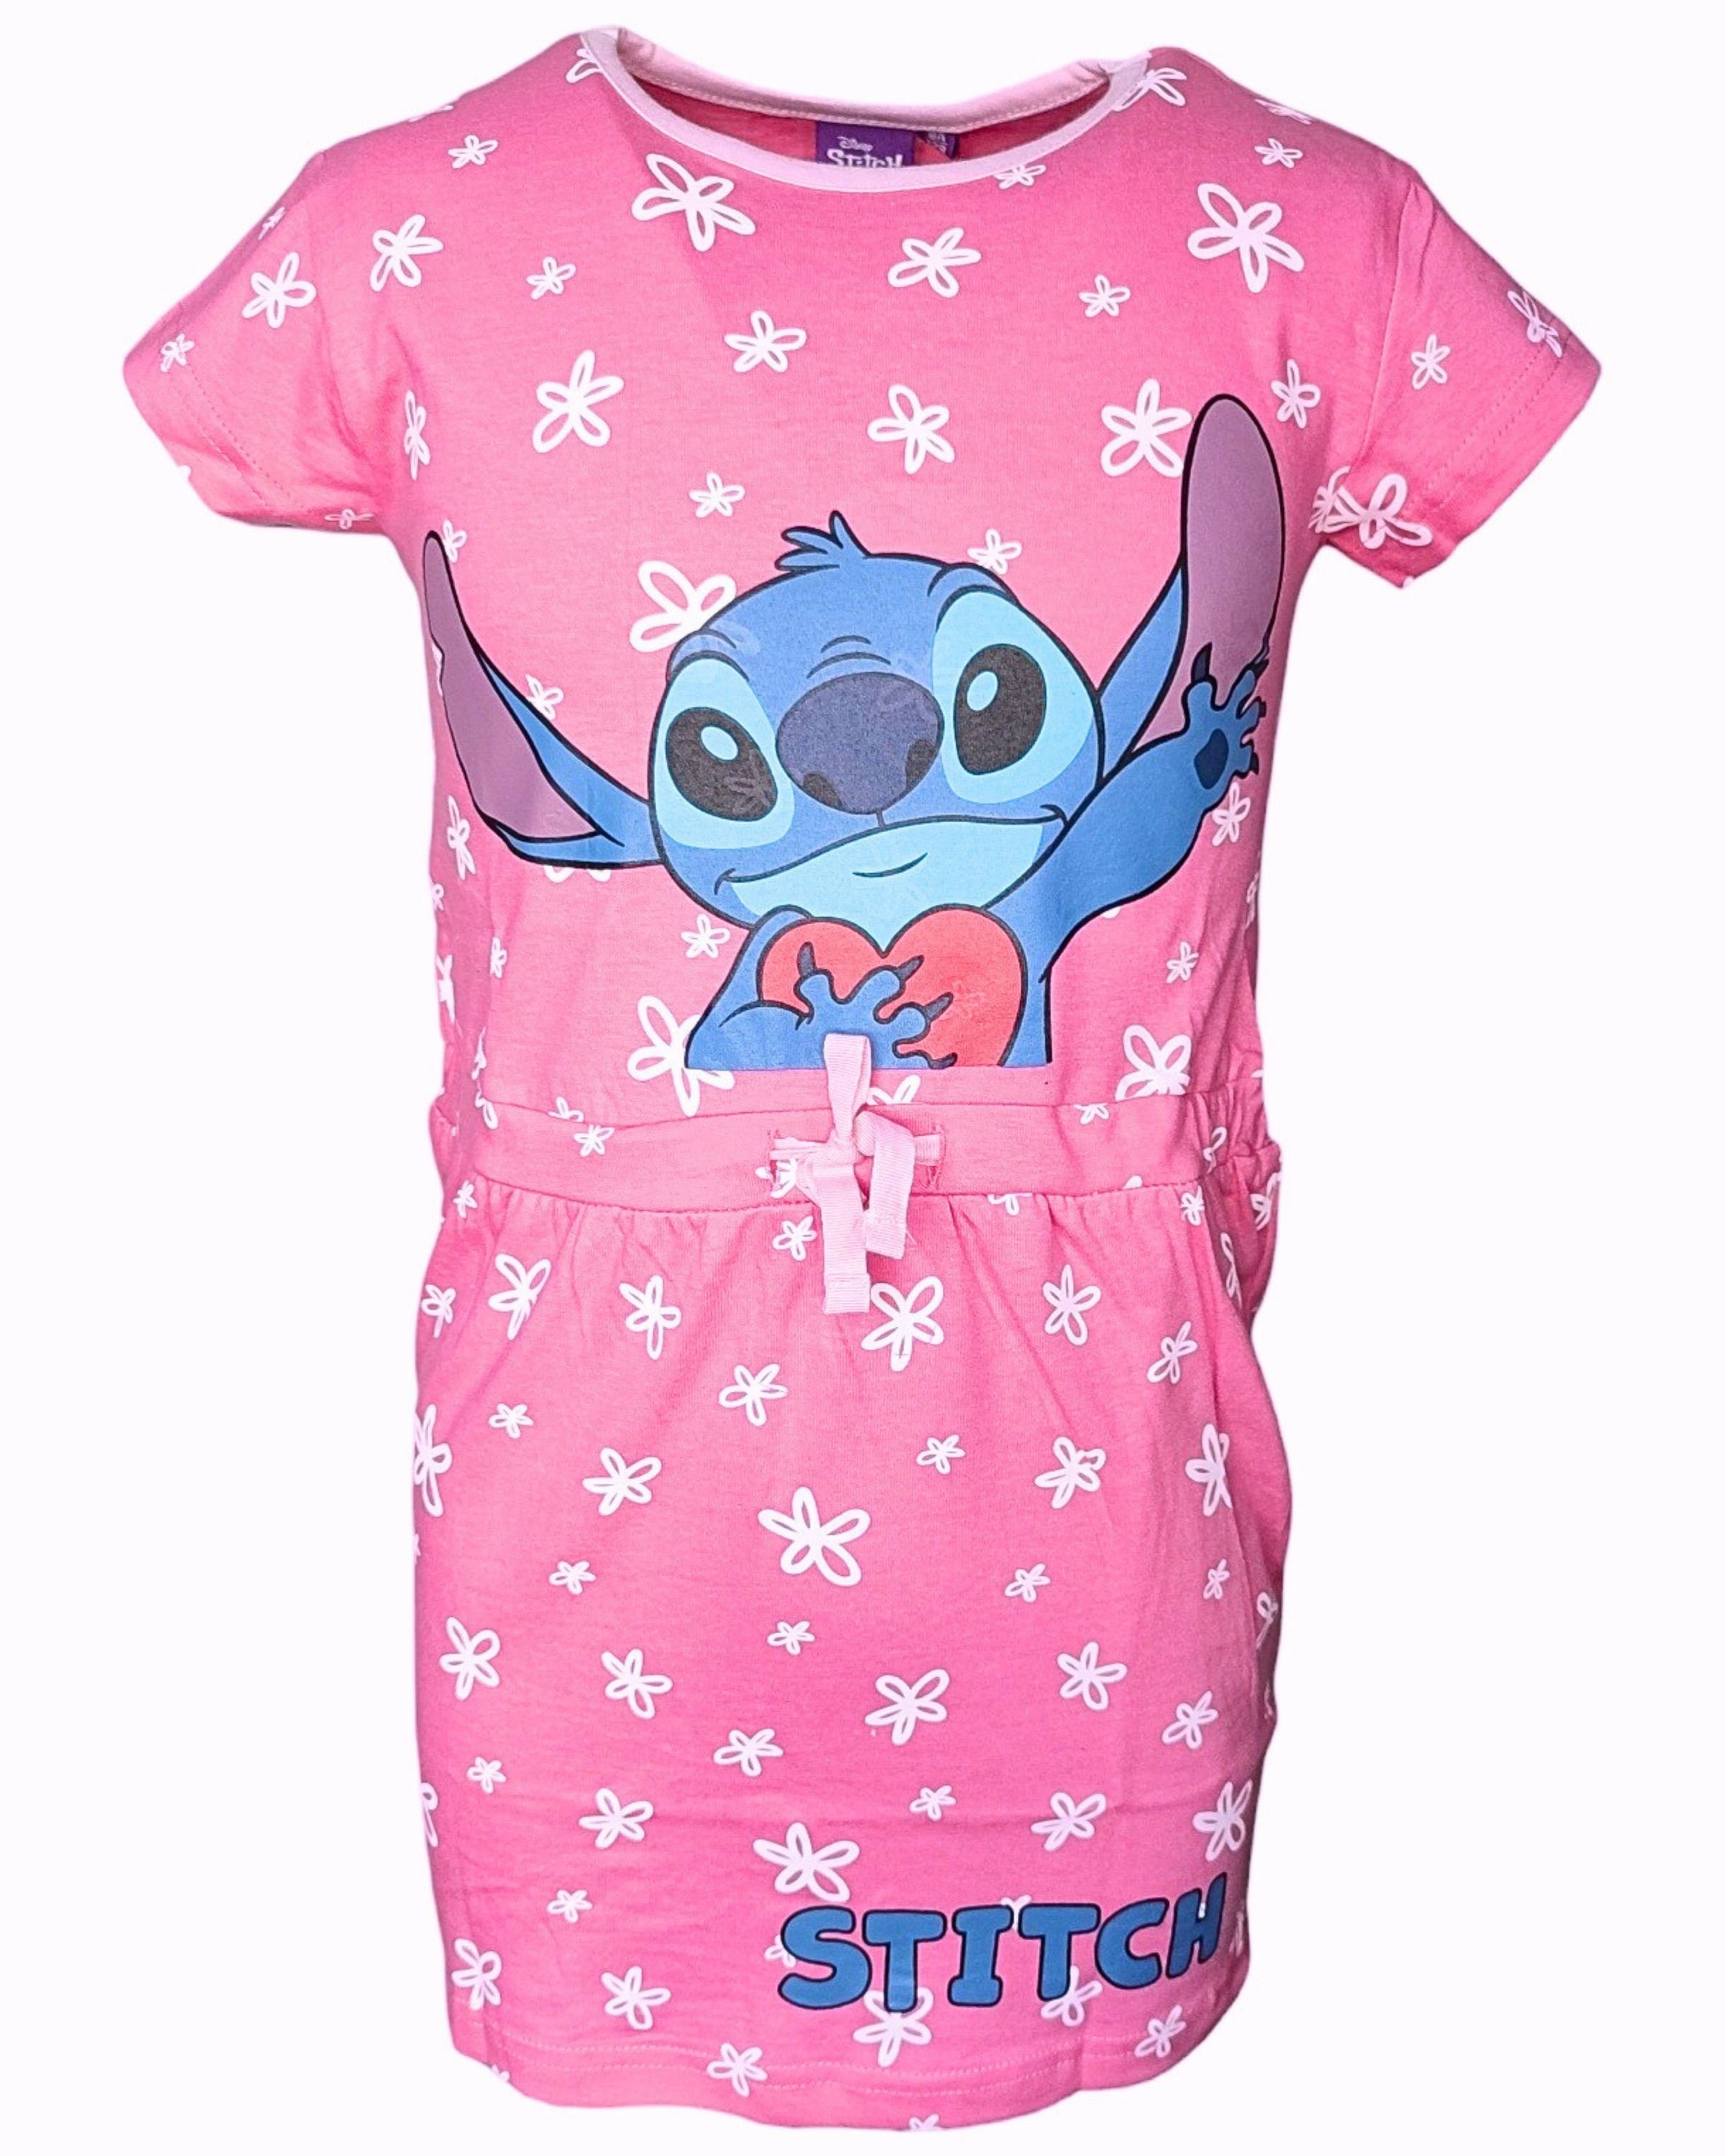 Lilo & Stitch Sommerkleid Jerseykleid für Mädchen Gr. 98-128 cm Pink